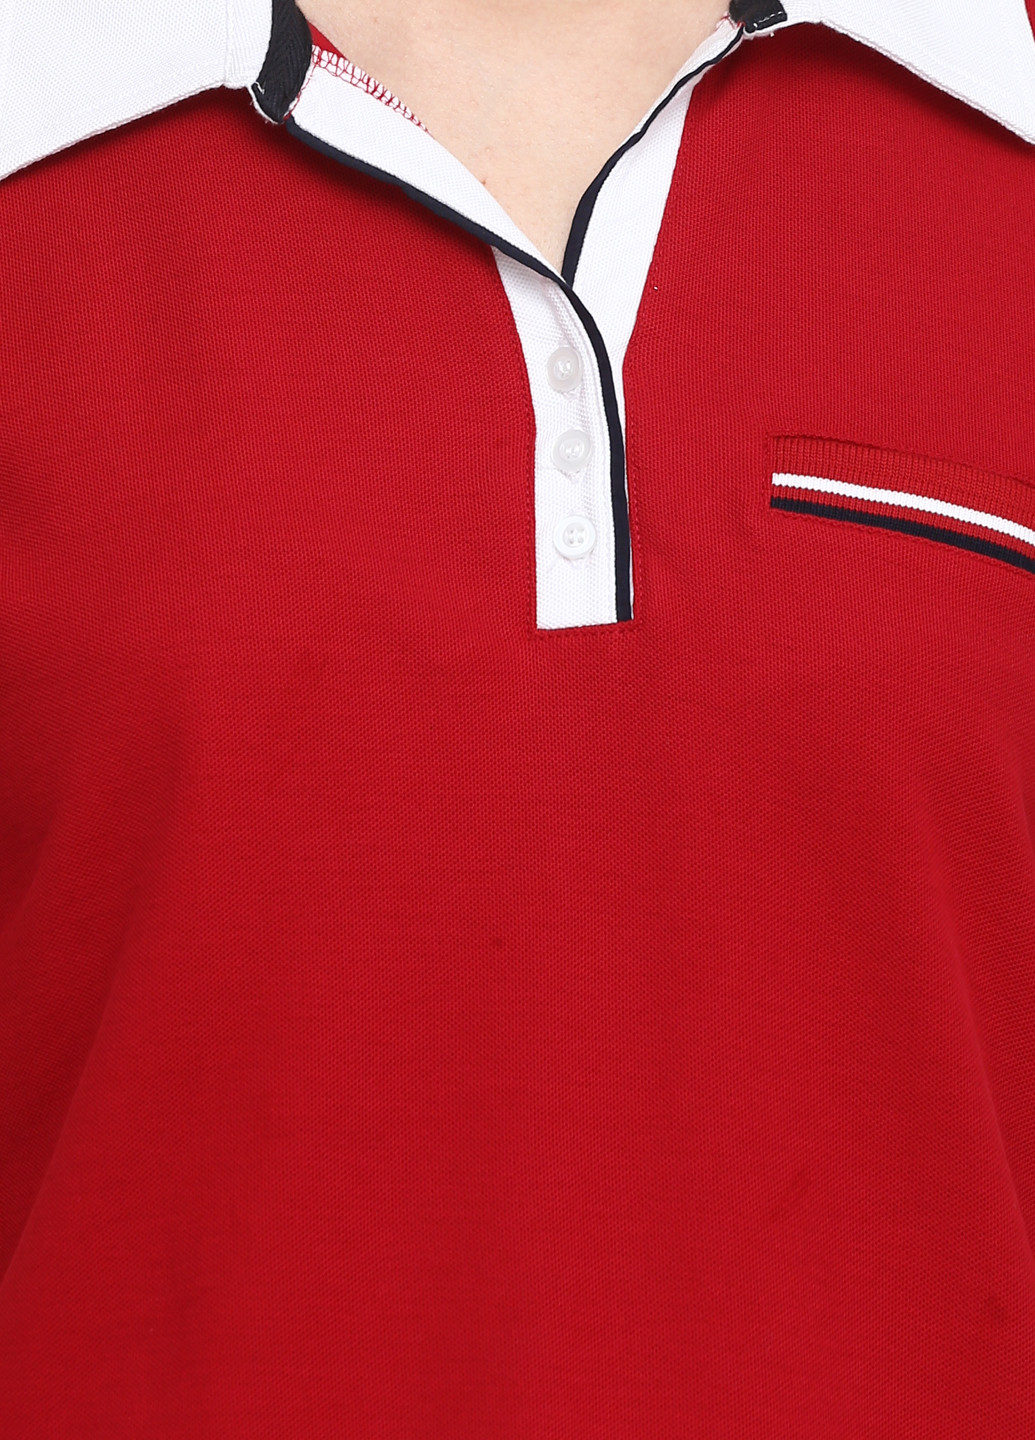 Красная женская футболка-поло BRANDTEX COASTLINE однотонная